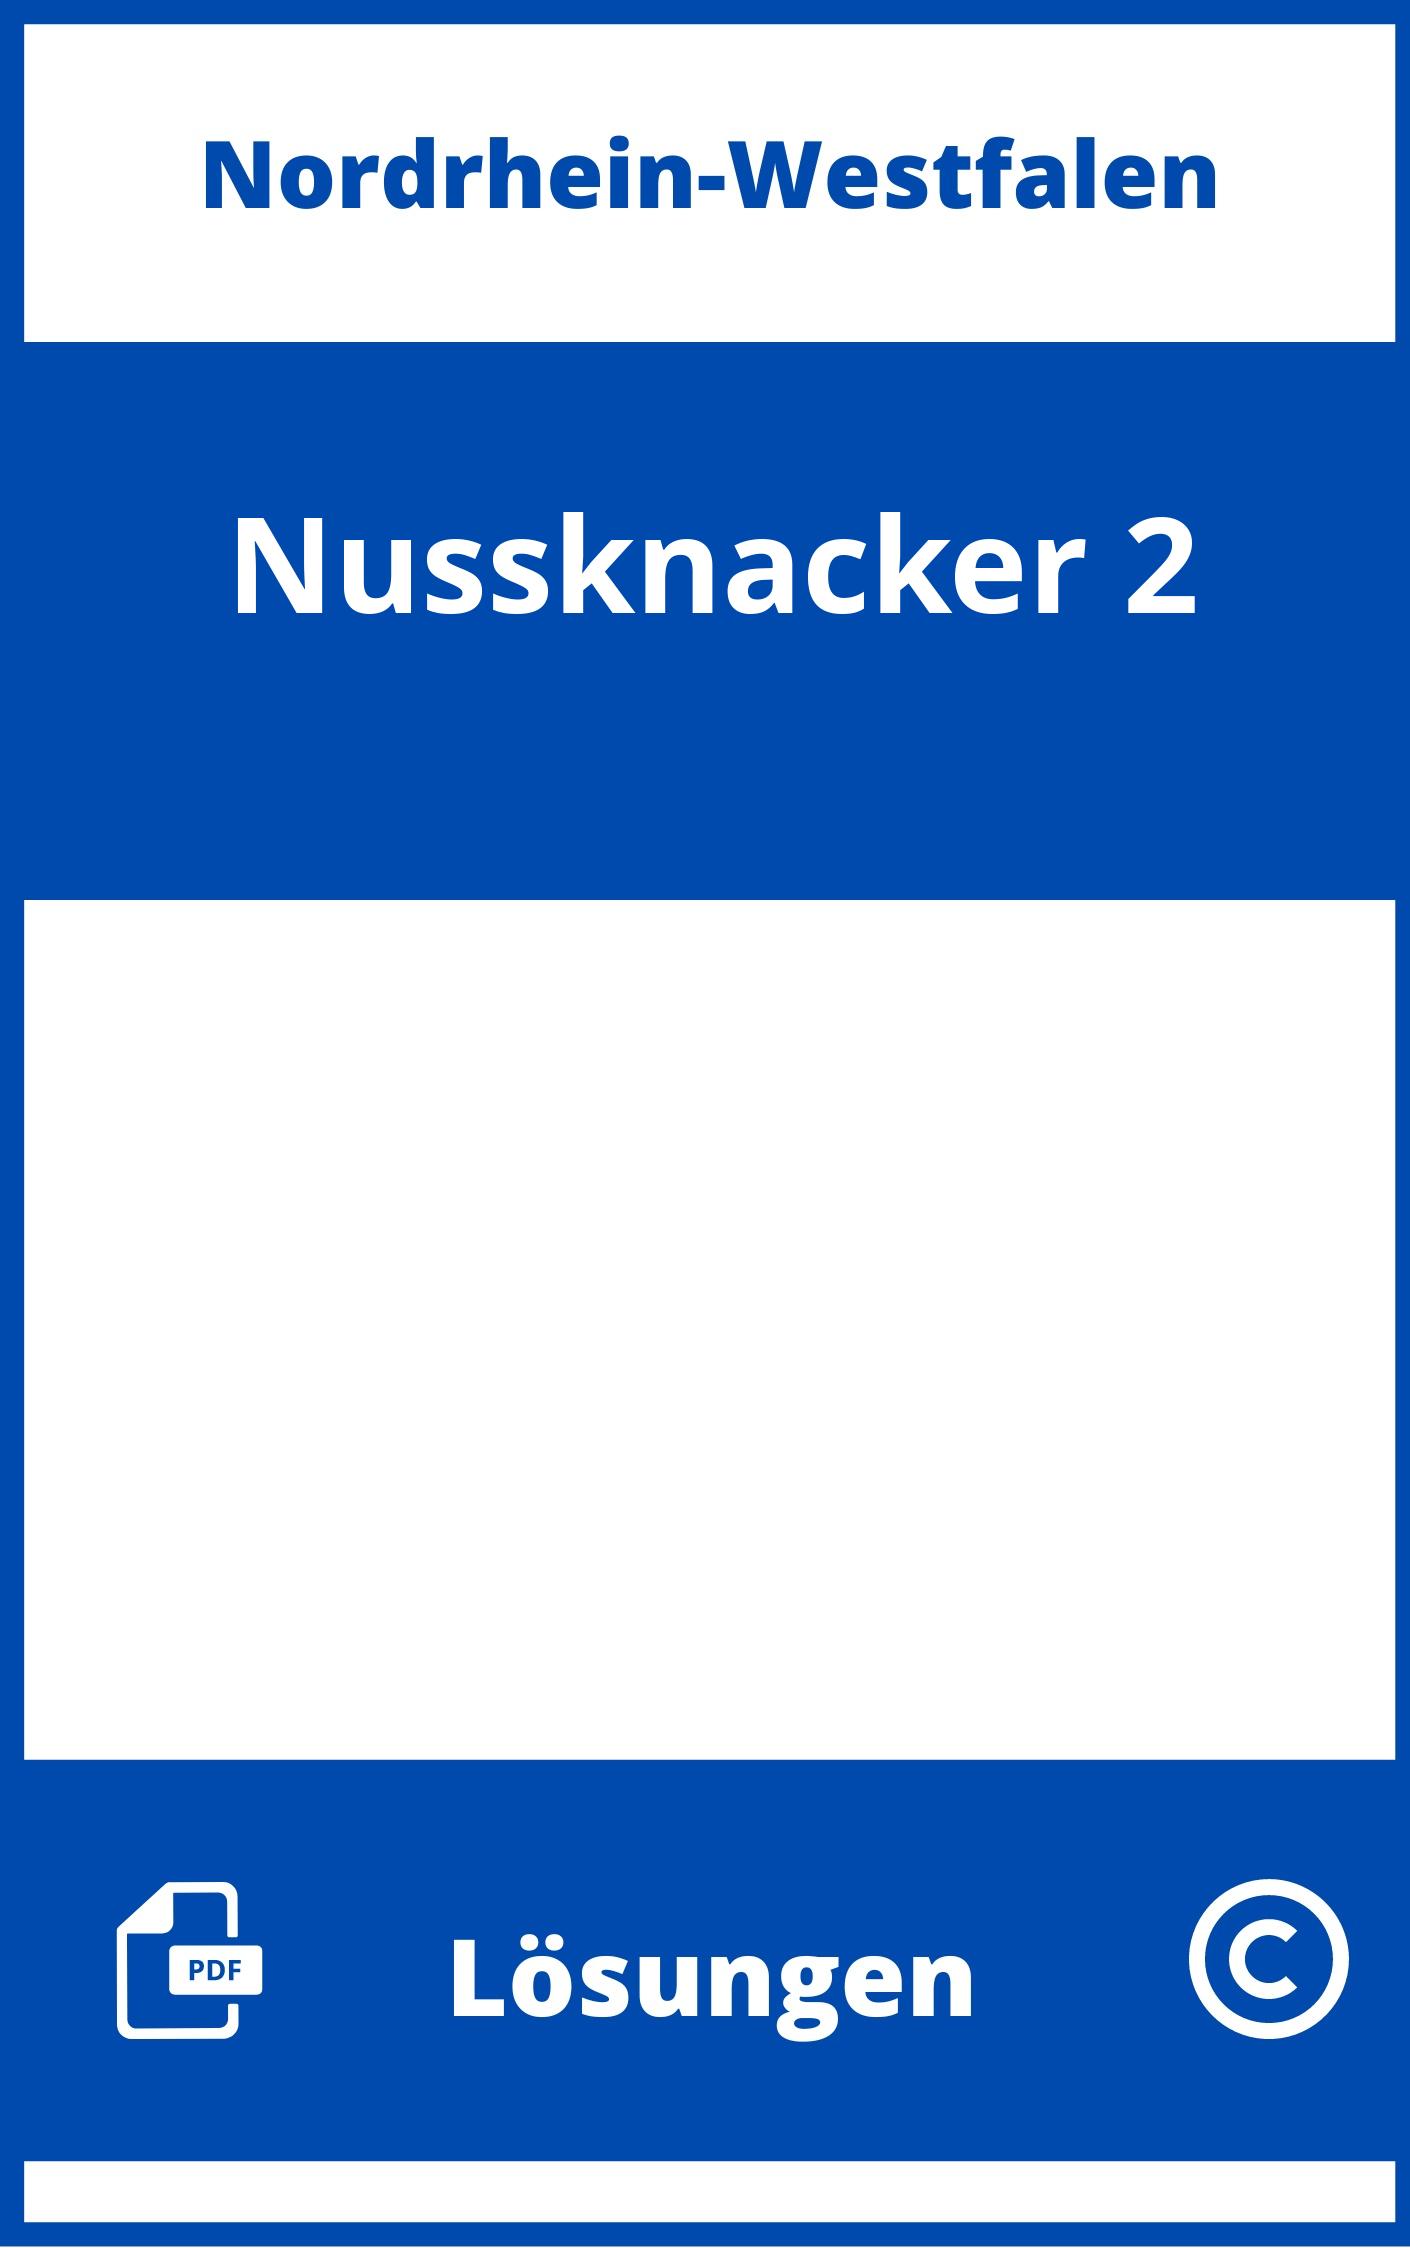 Nussknacker 2 Lösungen NRW PDF